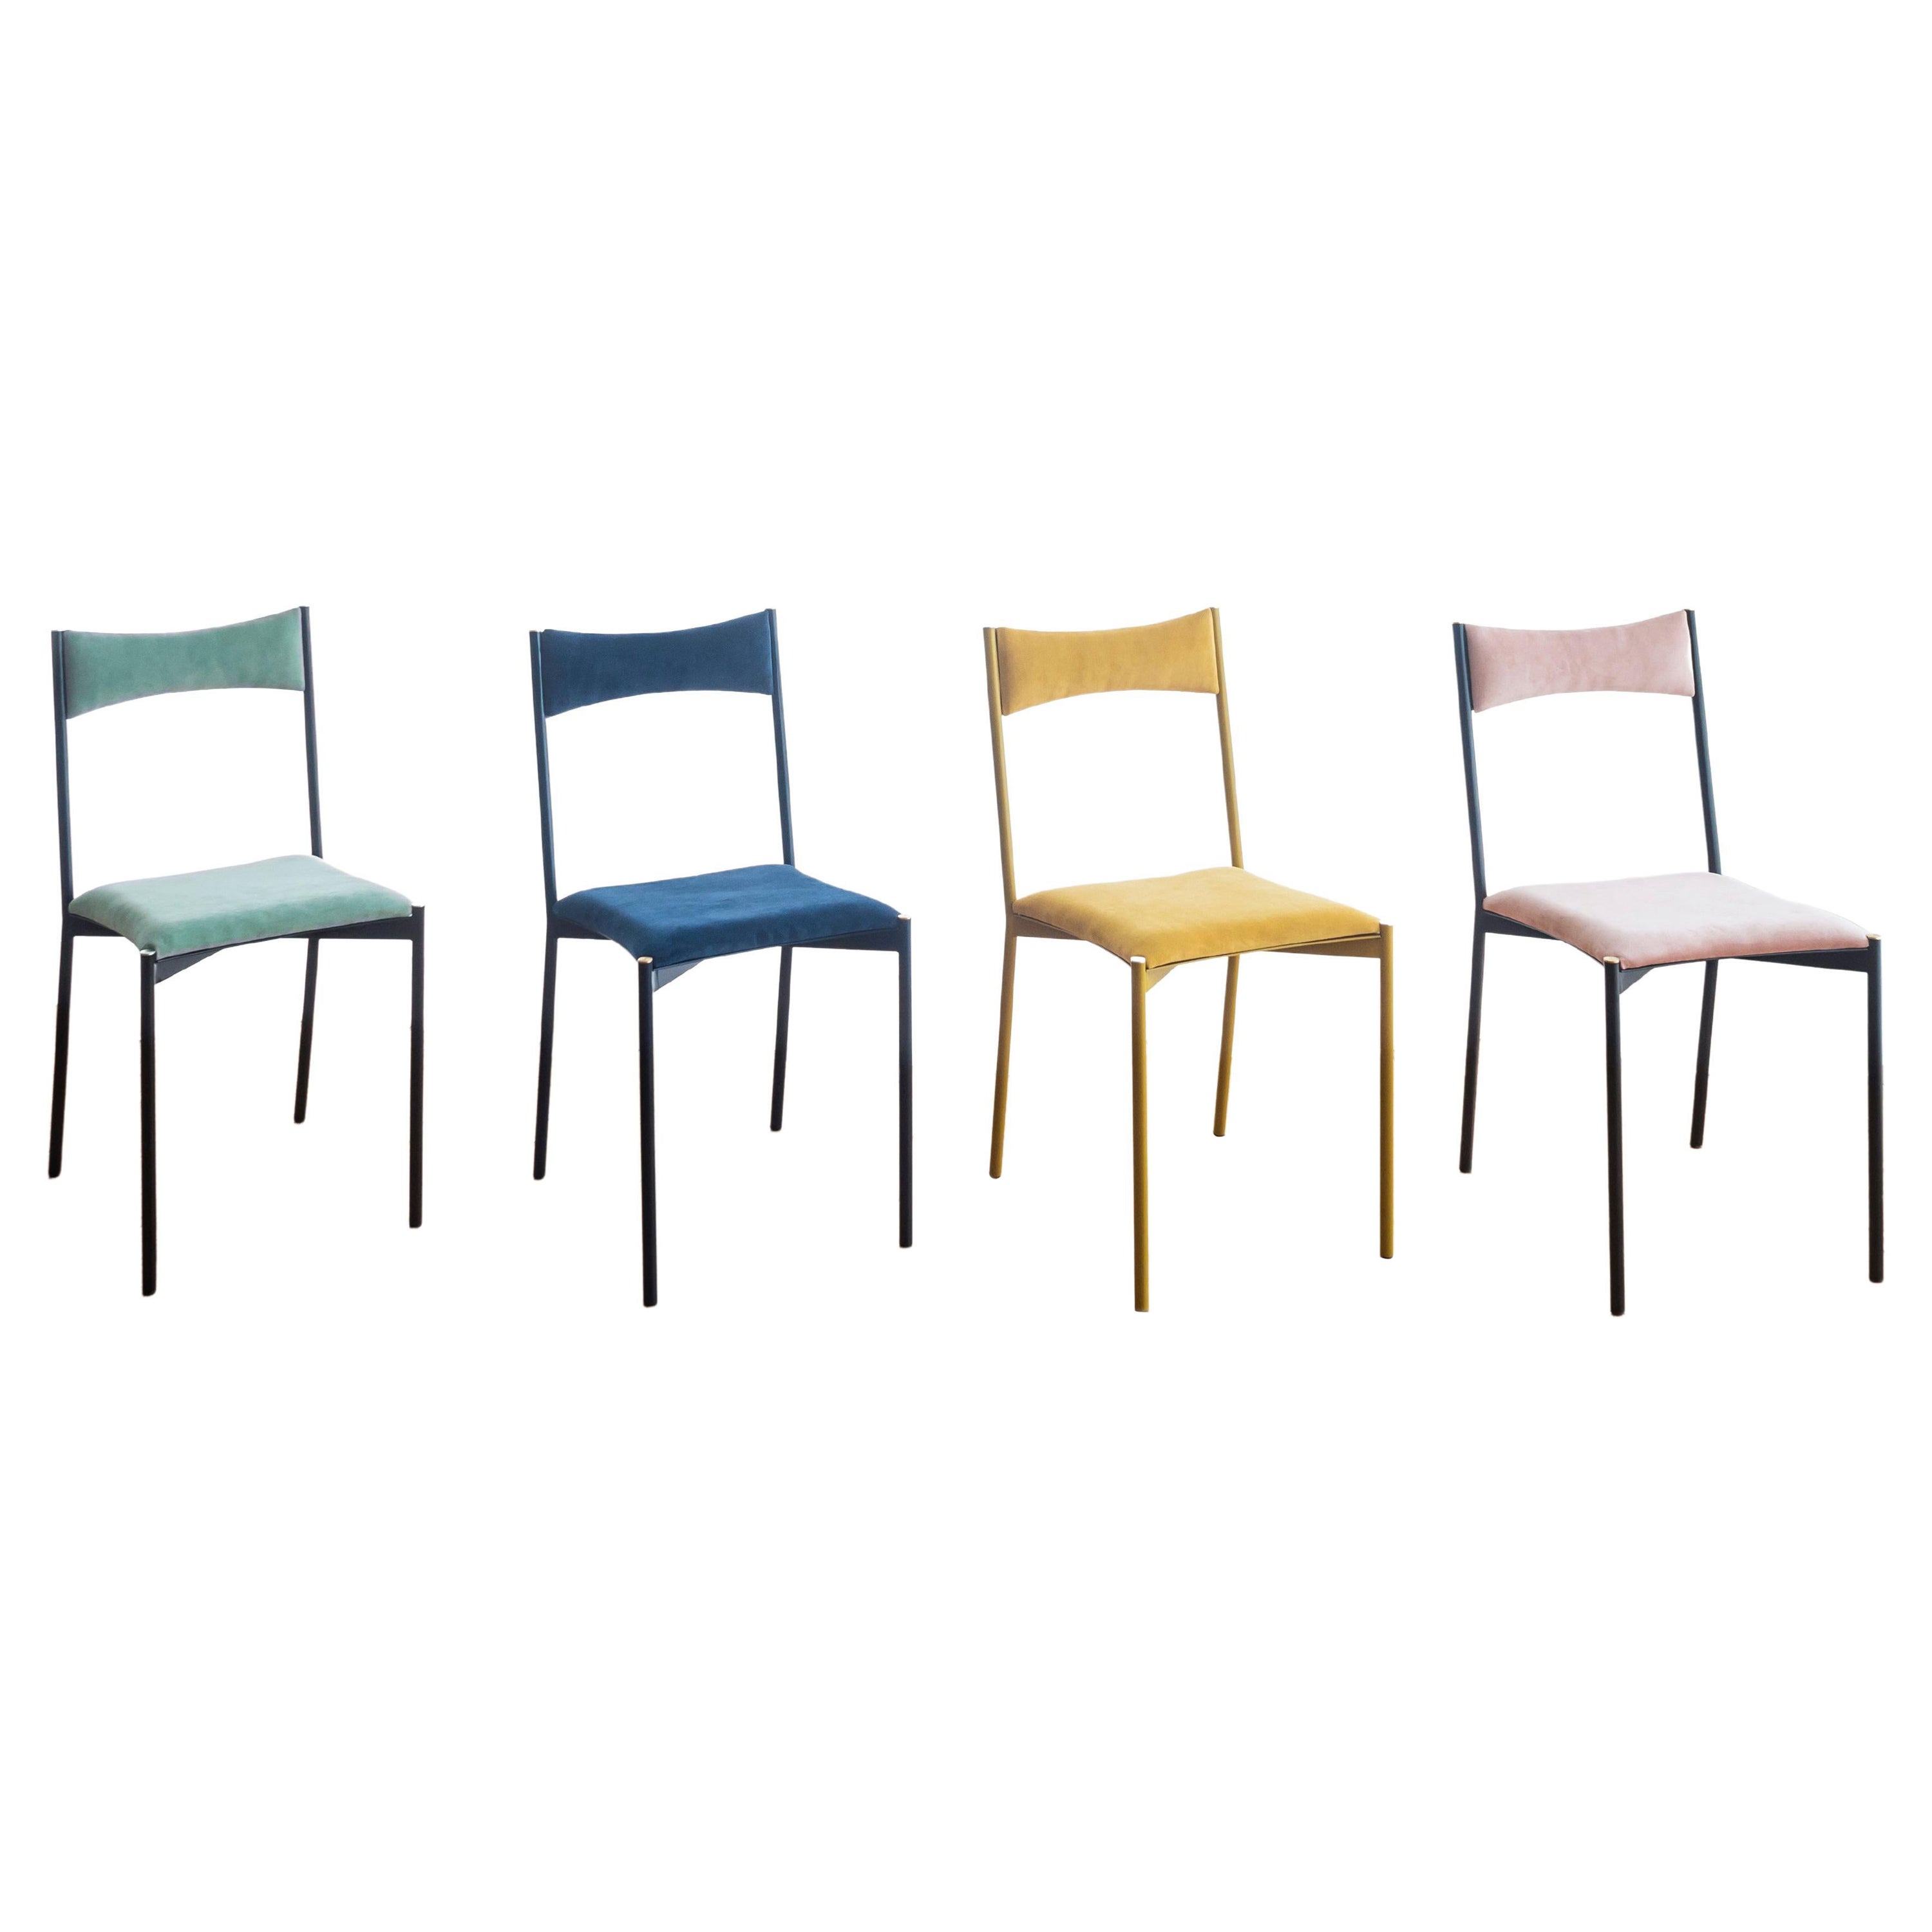 Ensemble de 4 chaises Tensa vertes, bleues, jaunes et roses par Ries